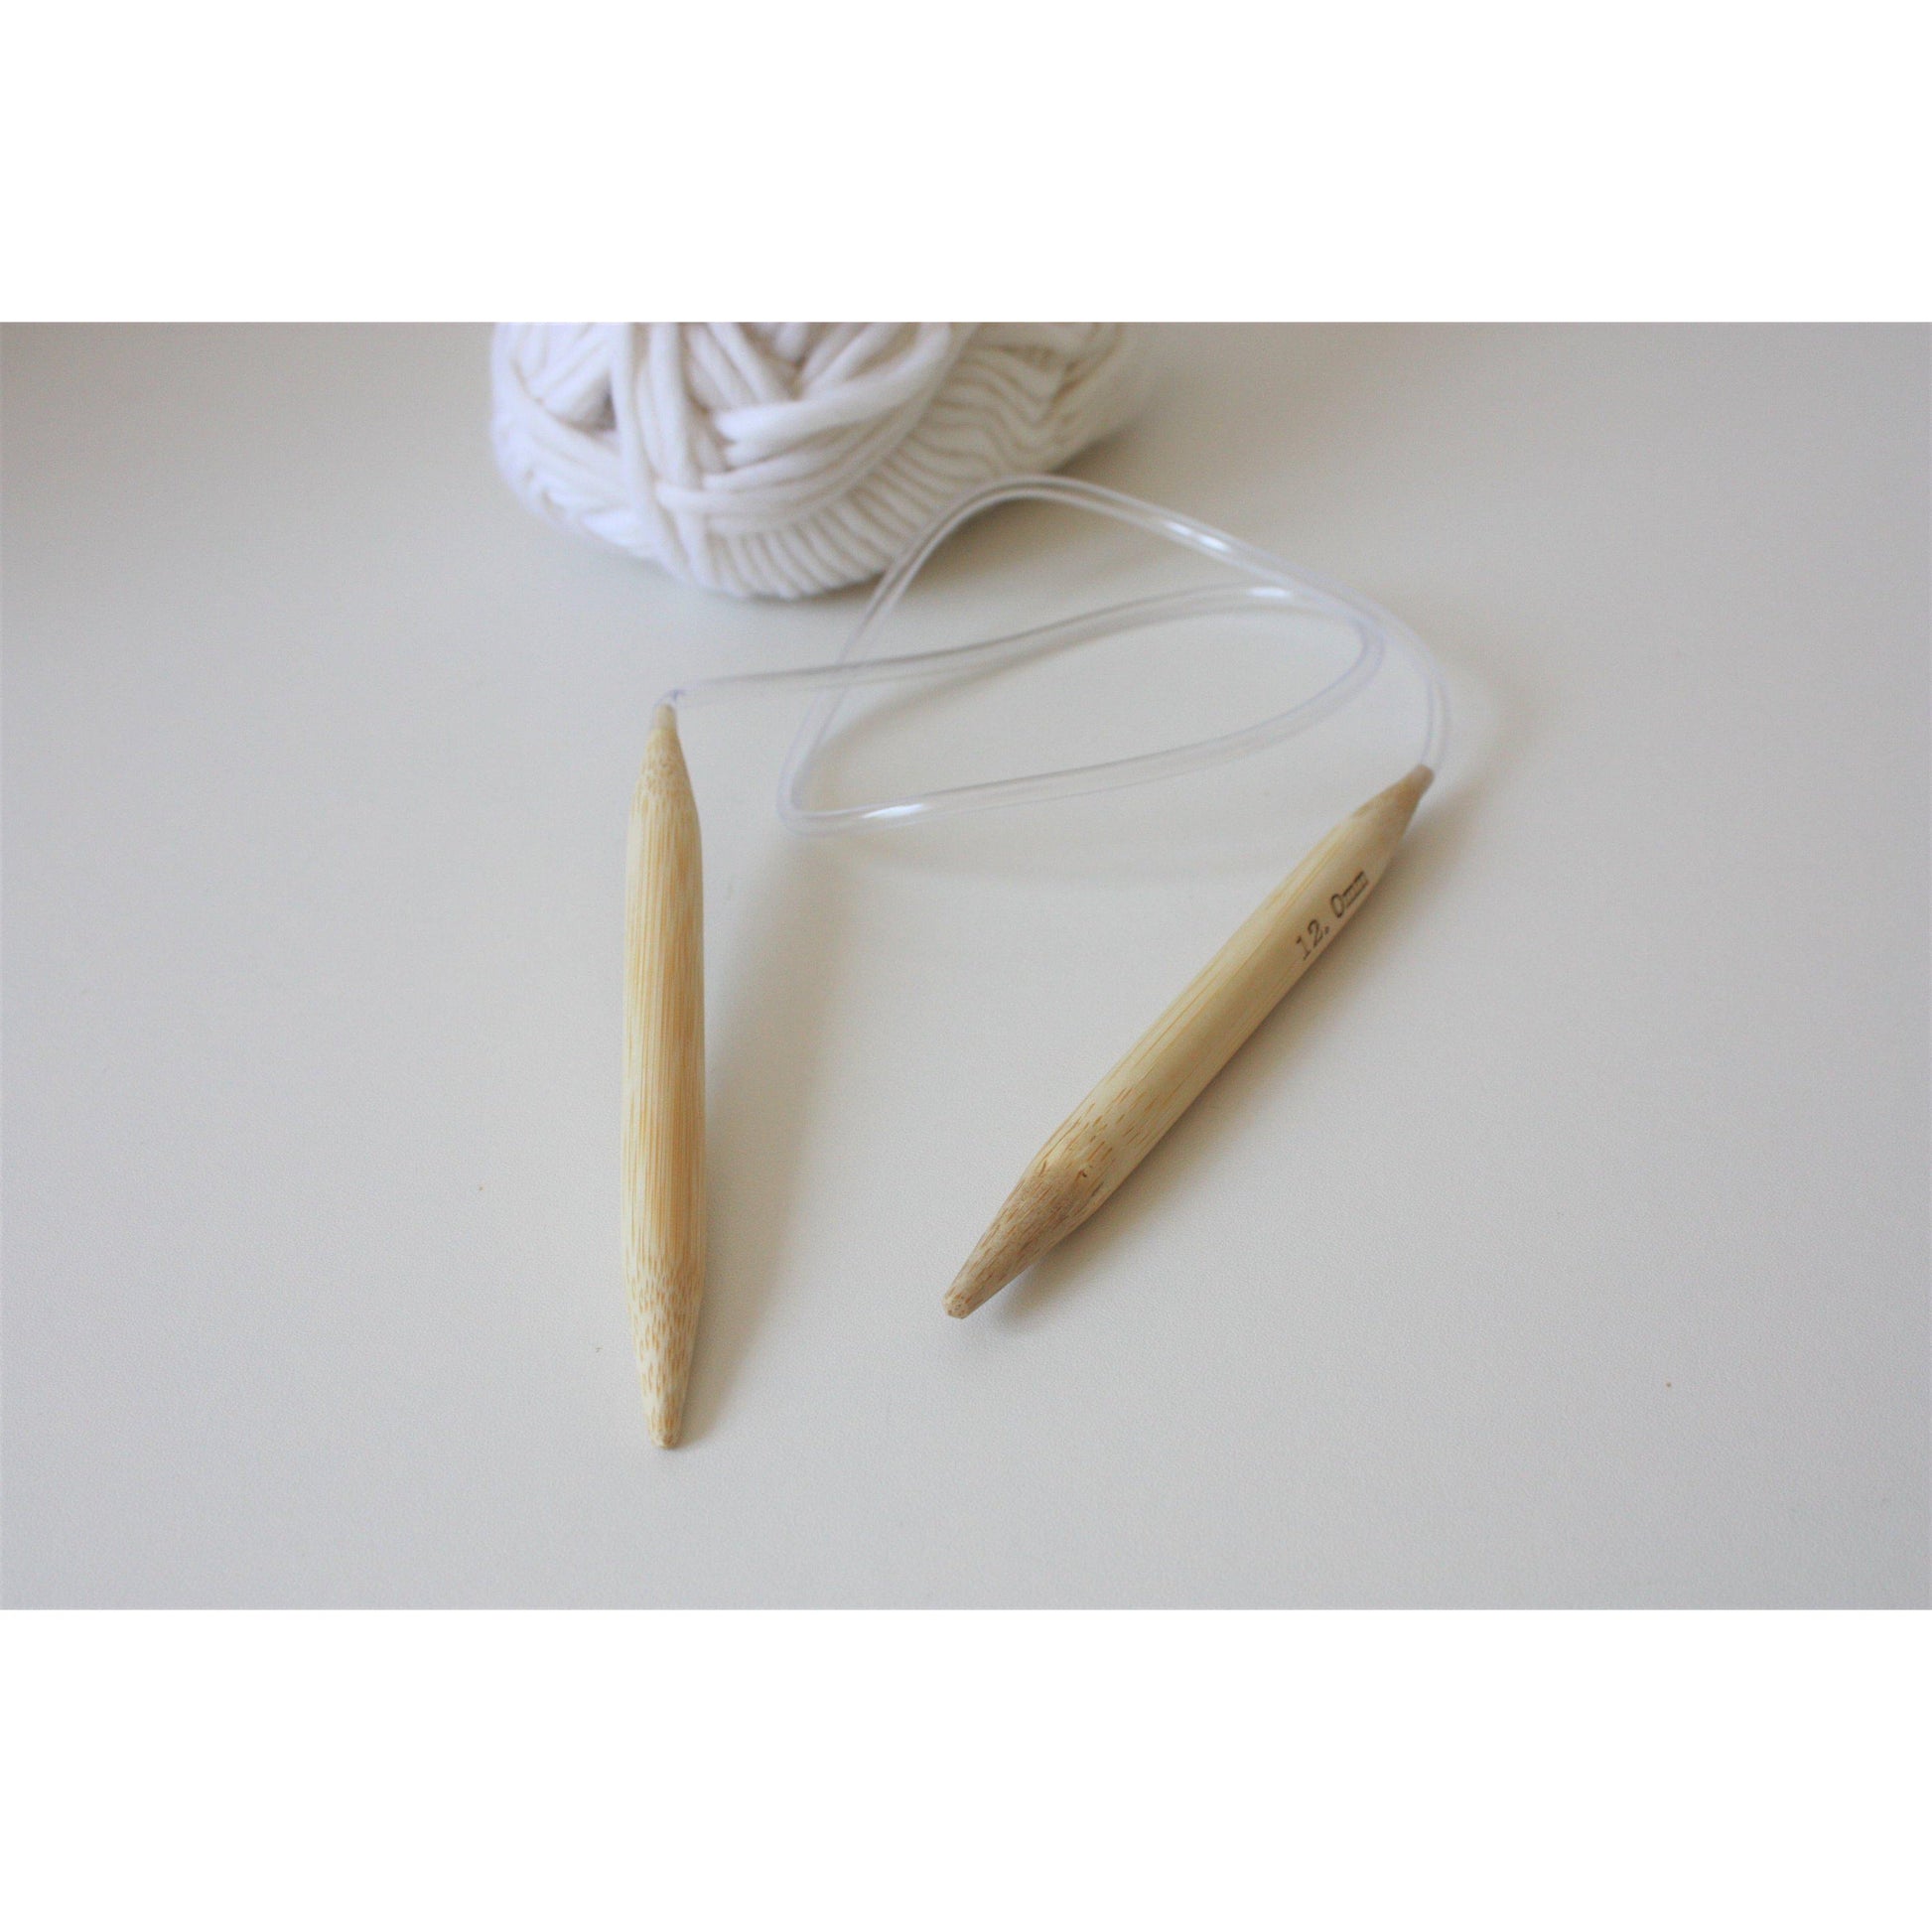 Bamboo Circular Needles, Knitting Needles